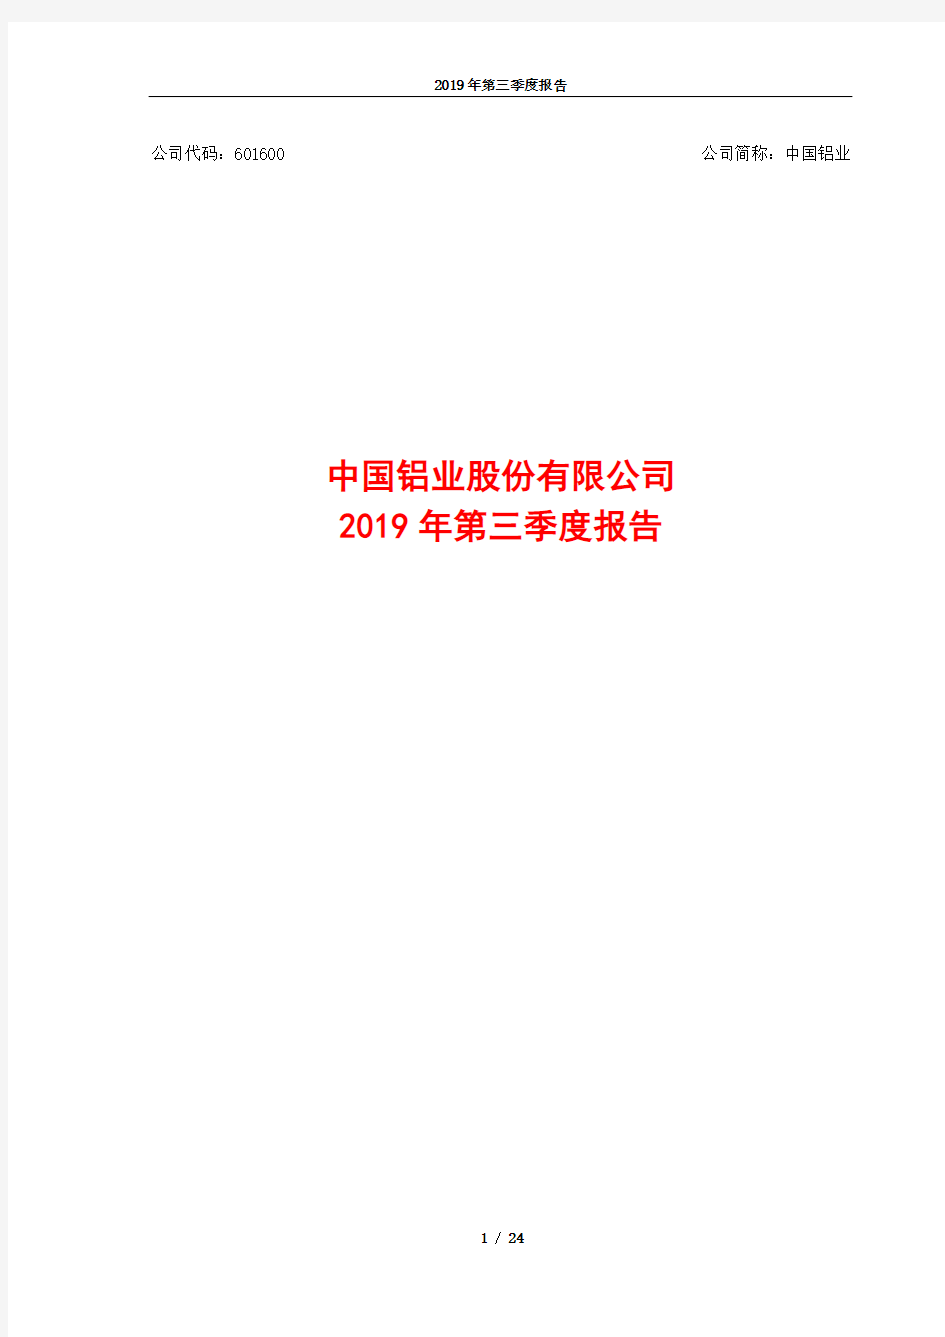 中国铝业 2019 第三季度财报